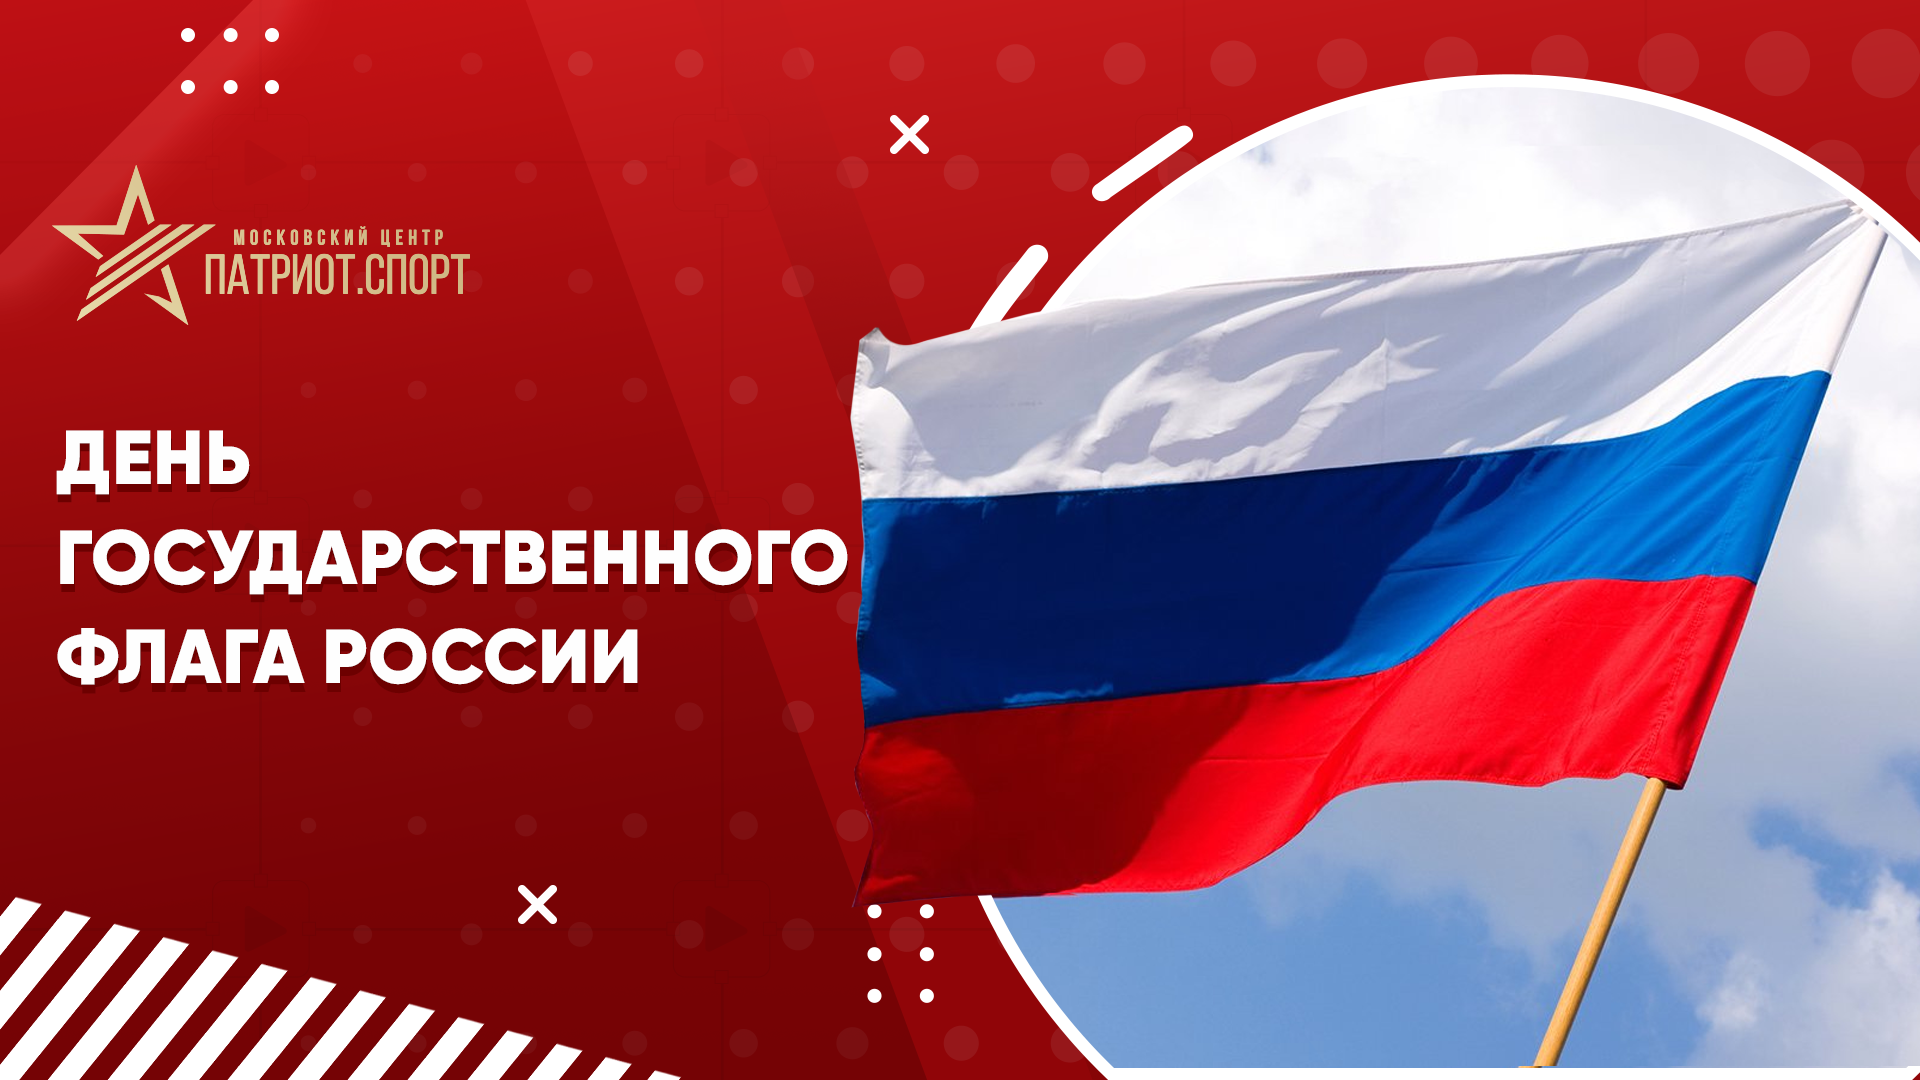 Московский центр «Патриот.Спорт» поздравляет с Днем Российского флага!